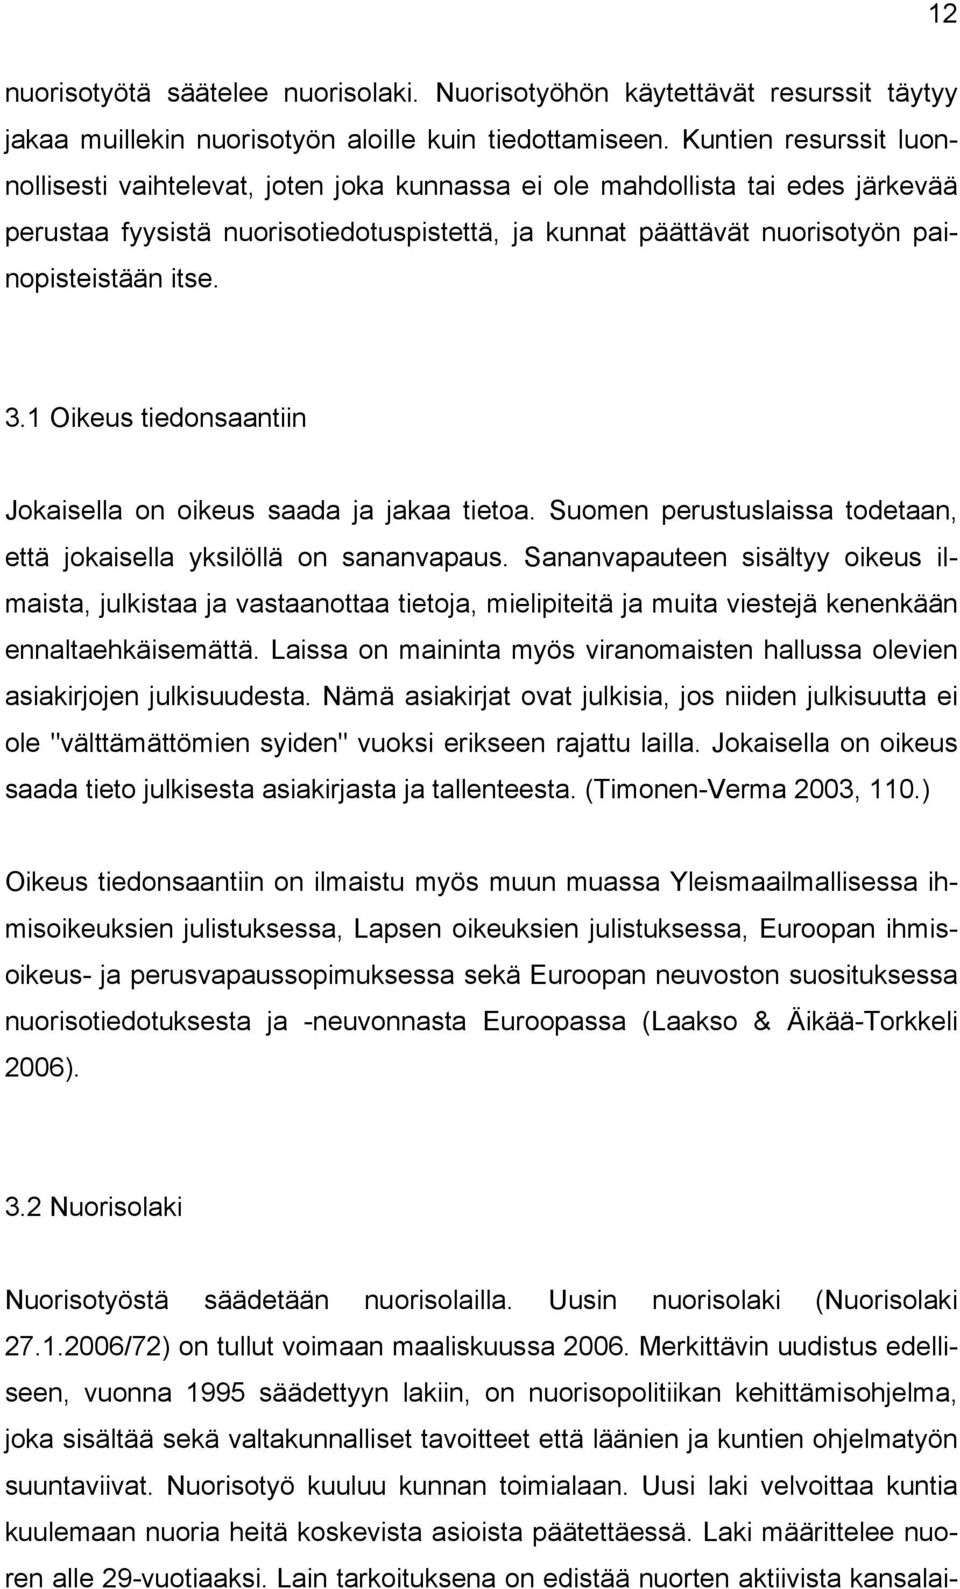 3.1 Oikeus tiedonsaantiin Jokaisella on oikeus saada ja jakaa tietoa. Suomen perustuslaissa todetaan, että jokaisella yksilöllä on sananvapaus.